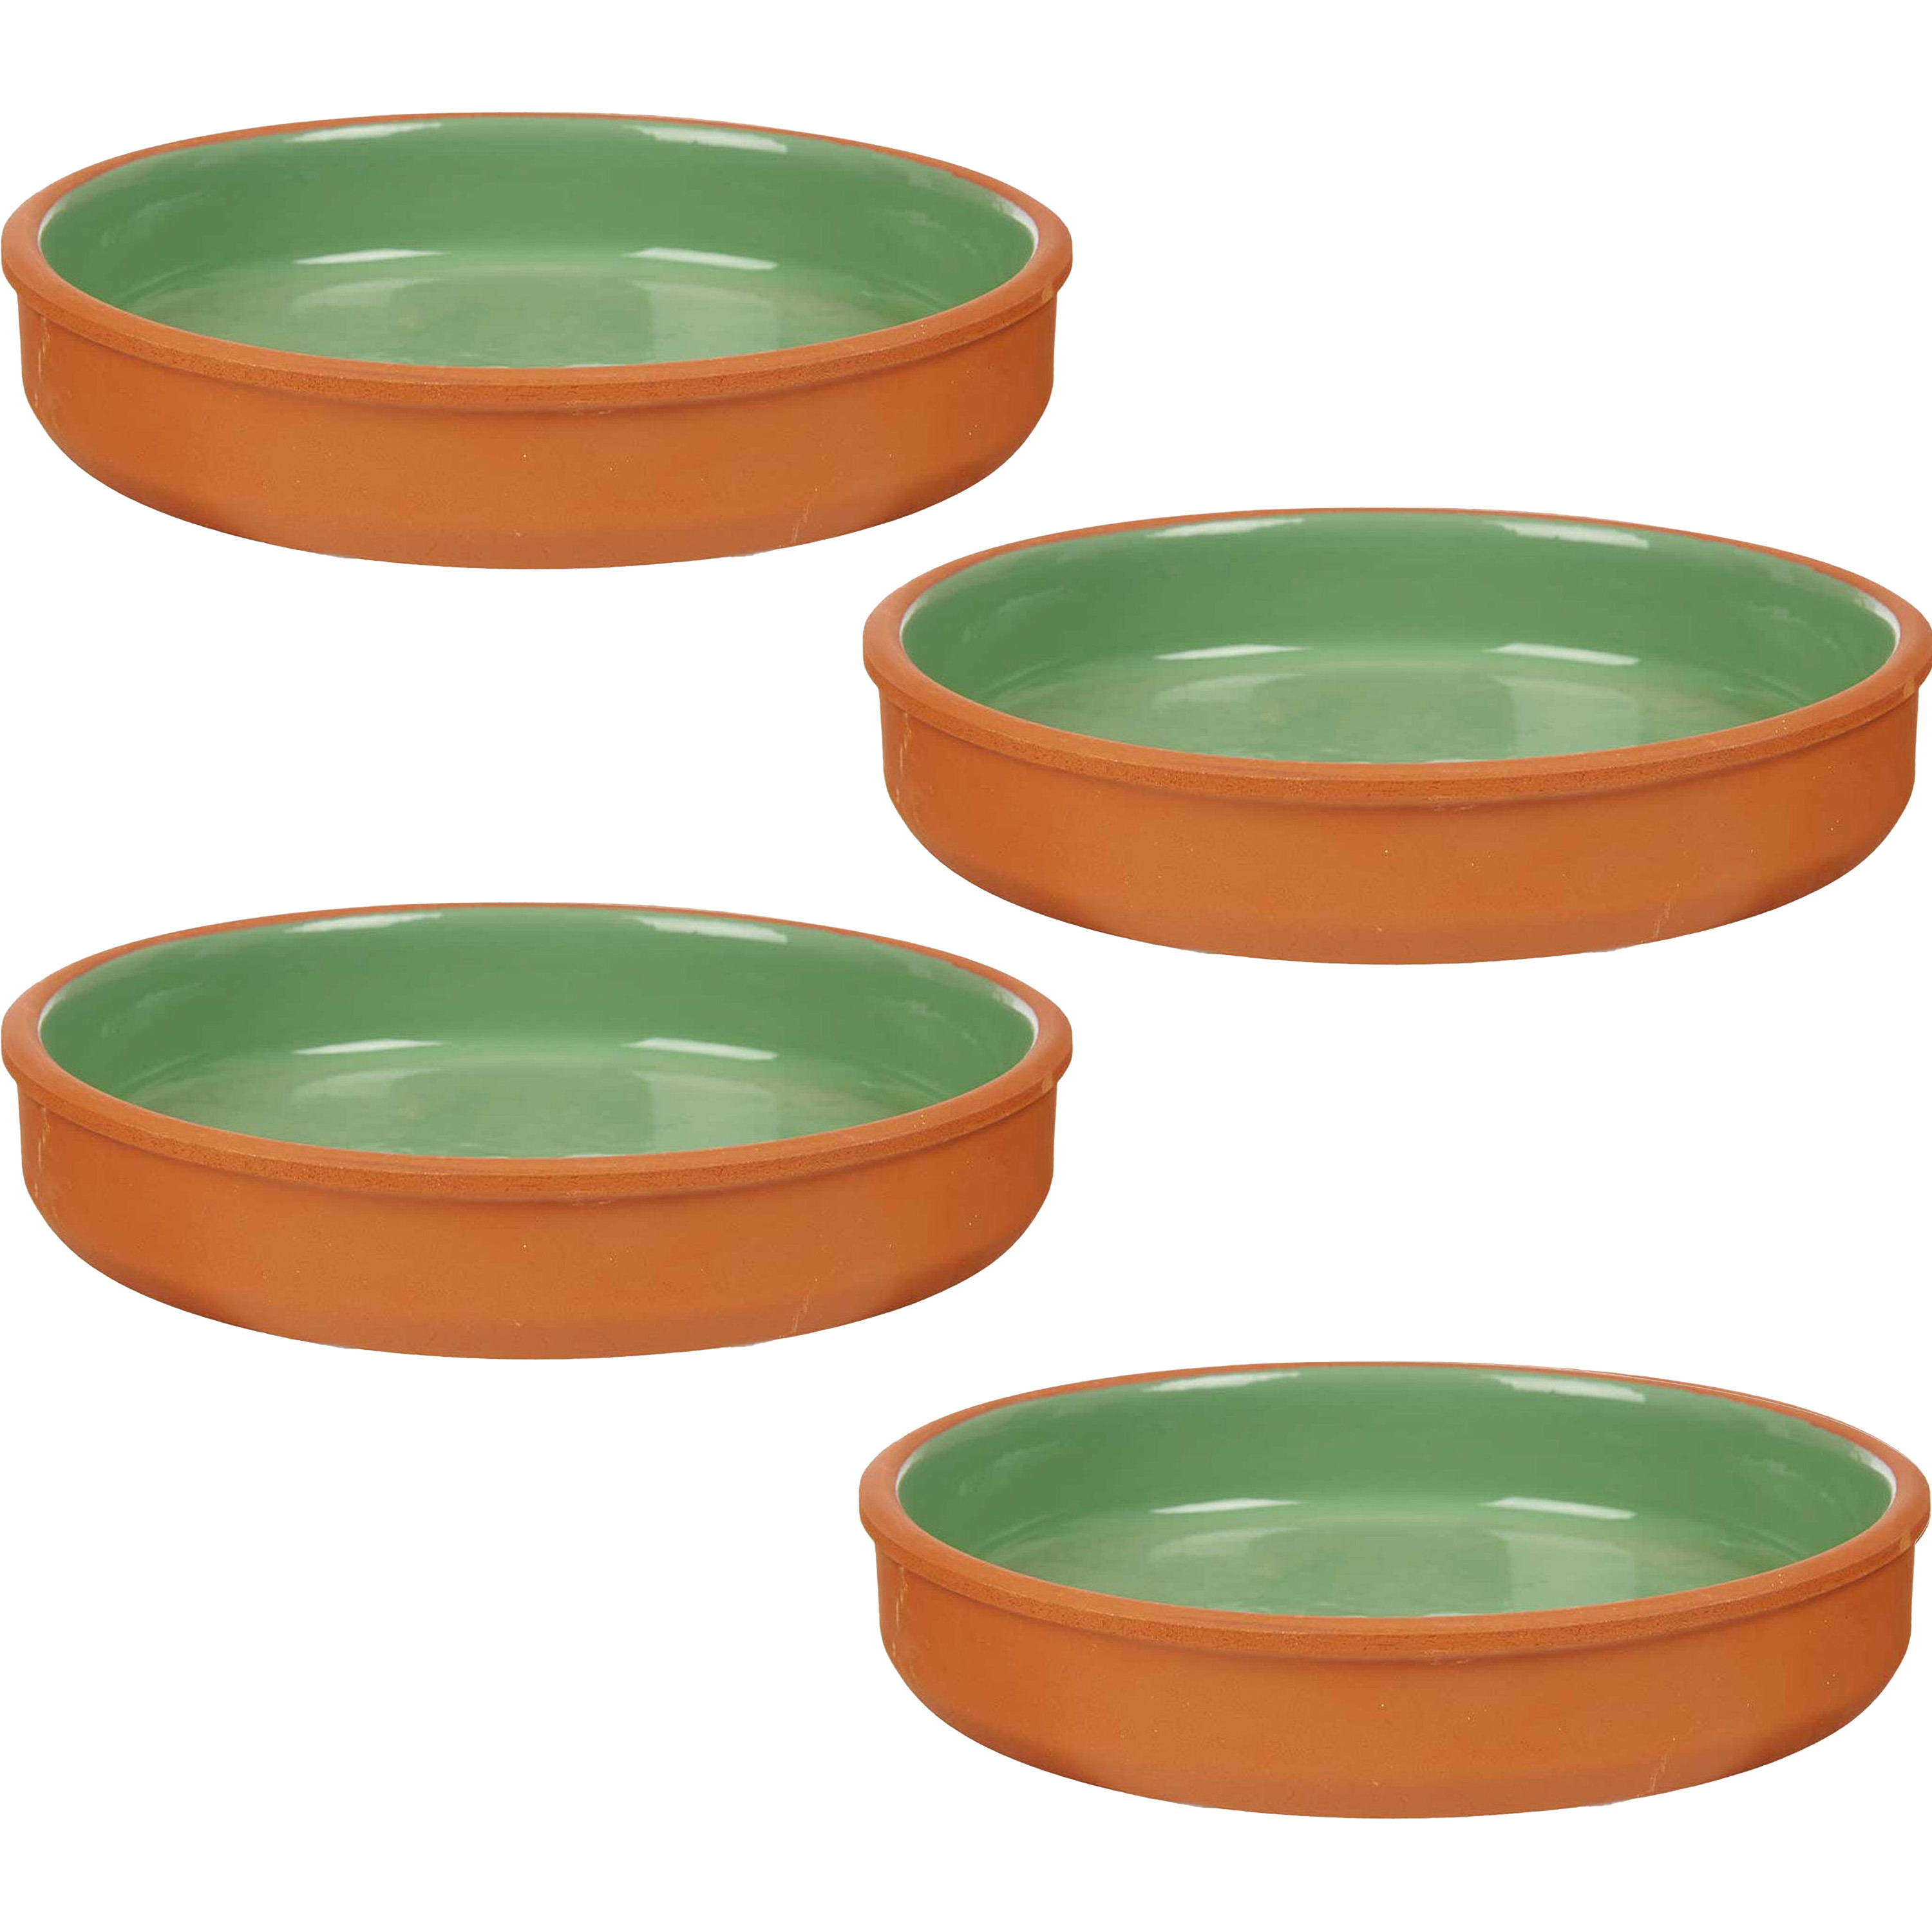 4x stuks tapas-hapjes serveren-oven schaal terracotta-groen 23 x 4 cm